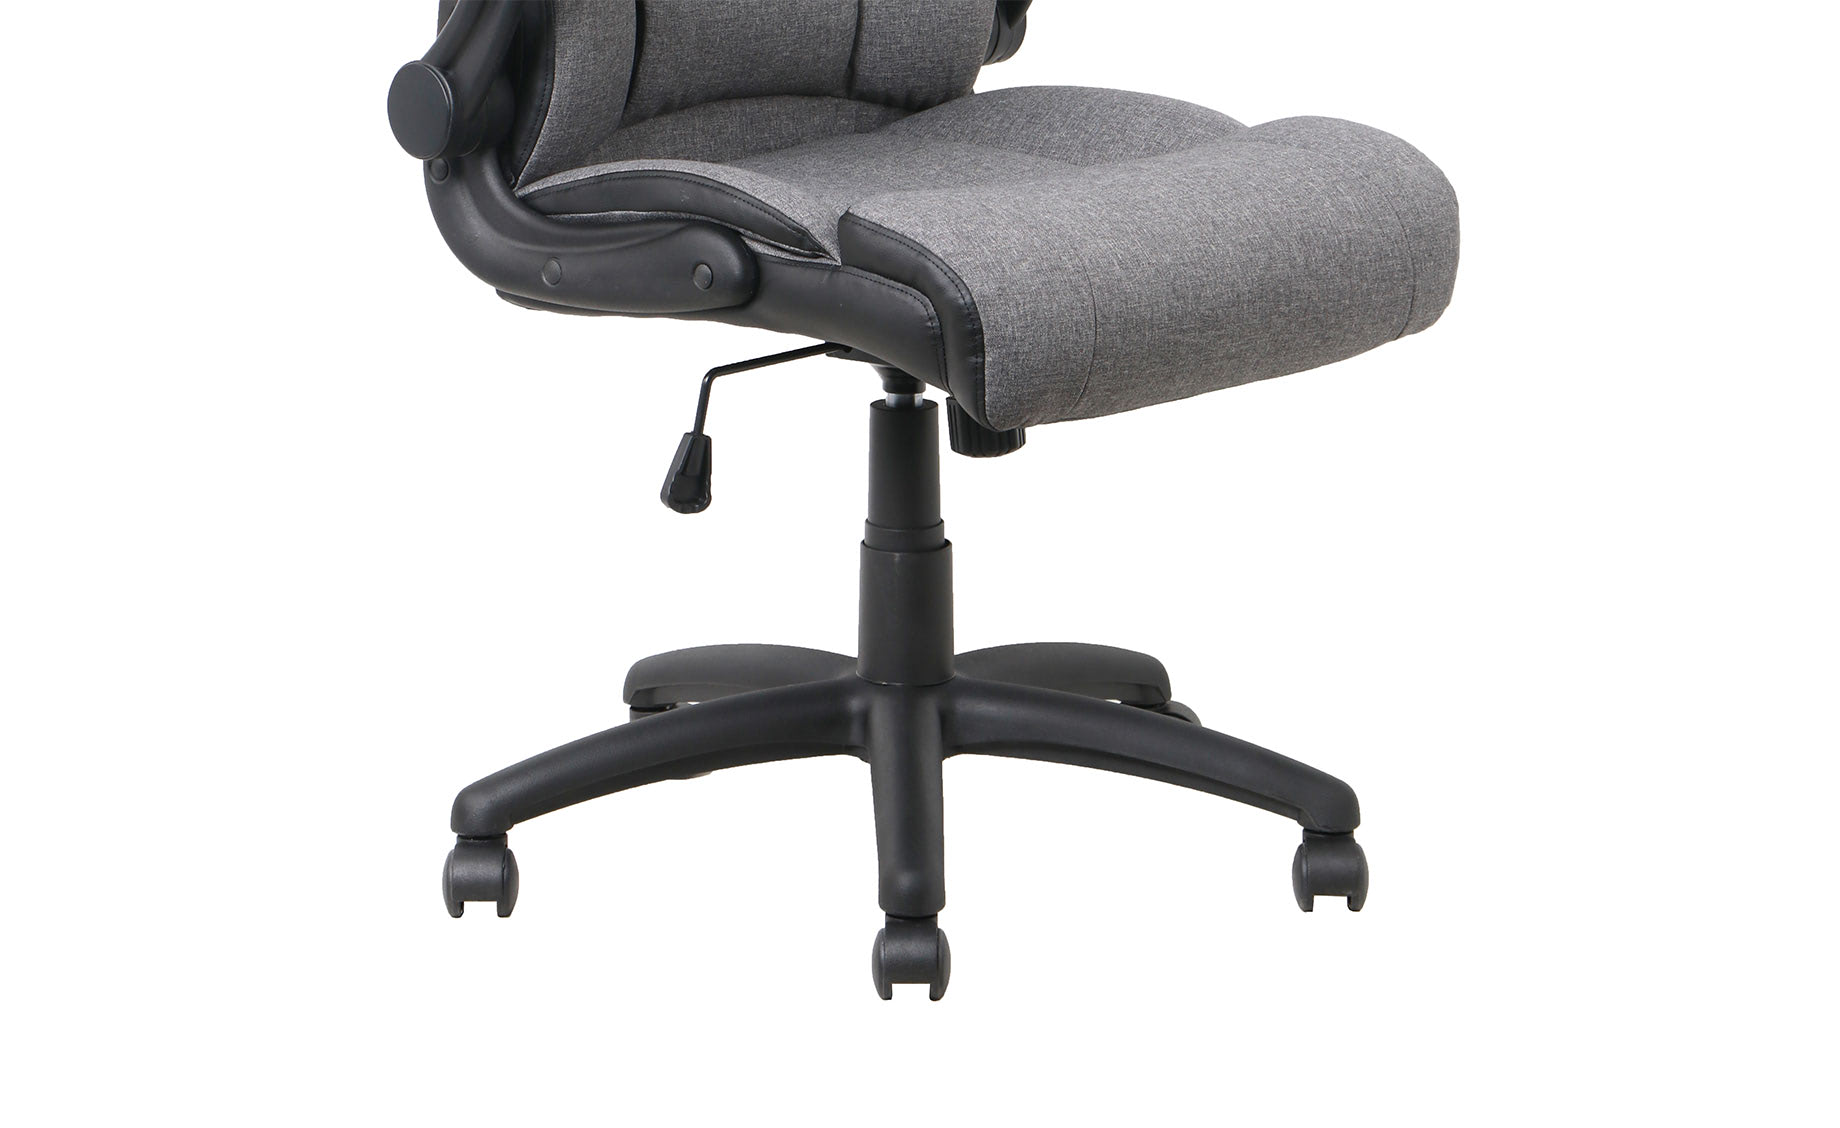 Karina kancelarijska fotelja 71x69,5x114-123,5 cm sivo/crna